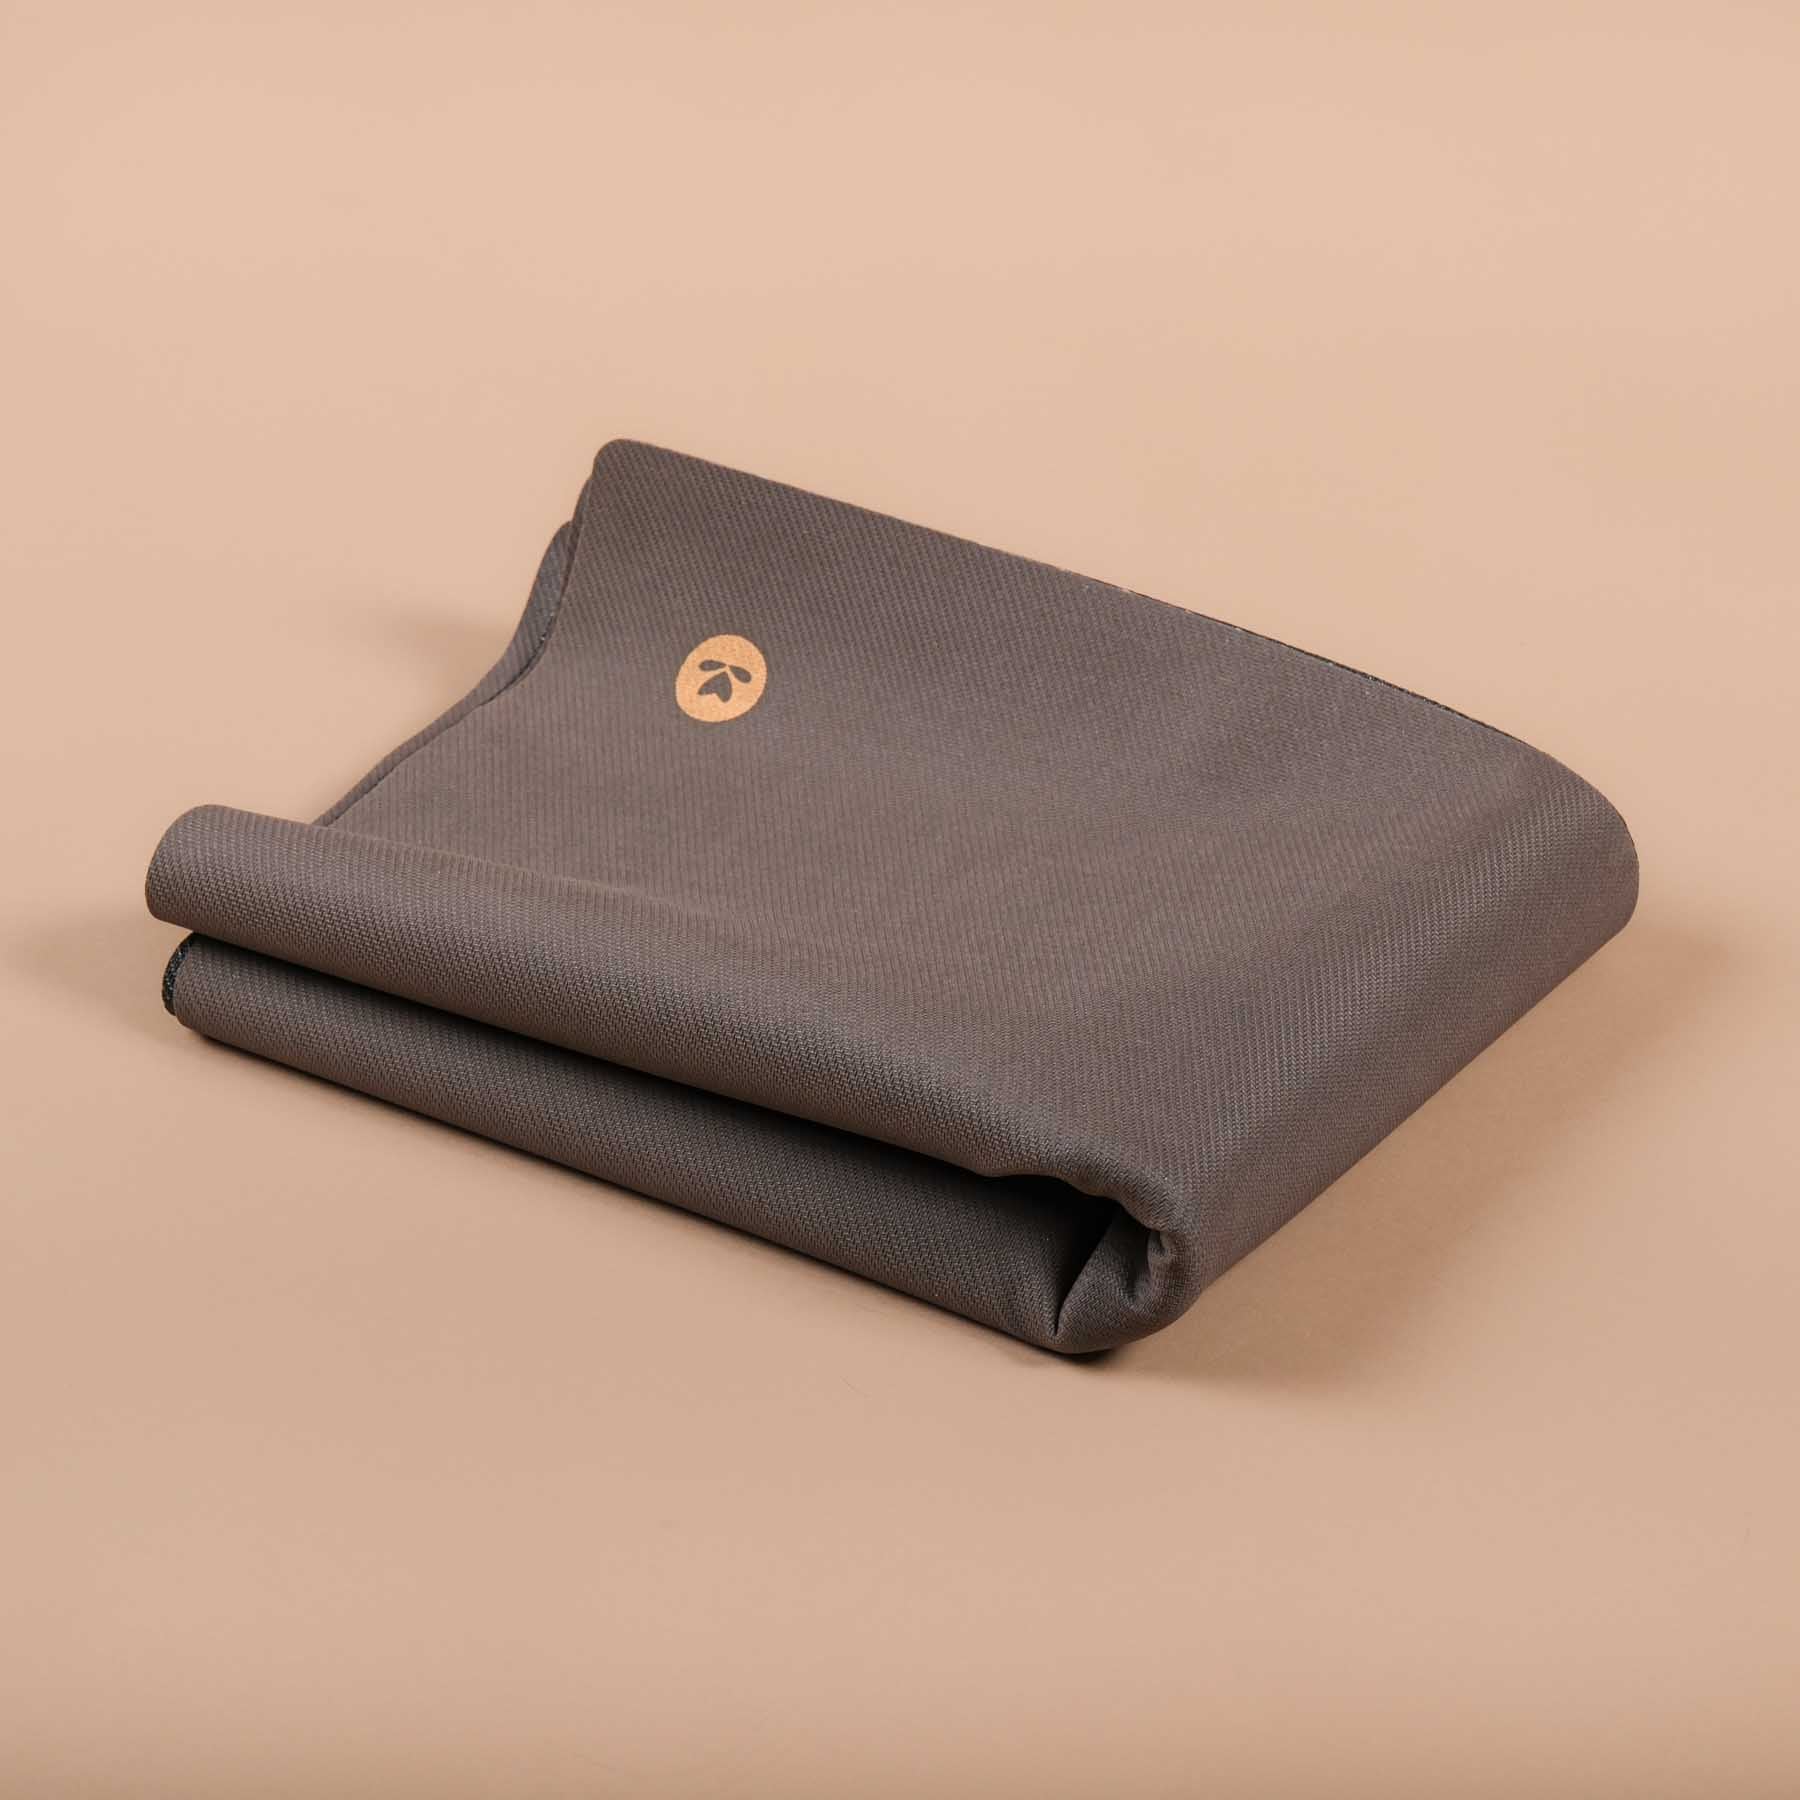 Tappetino da viaggio - Yoga Cloth EcoGrip in gomma naturale FSC antracite